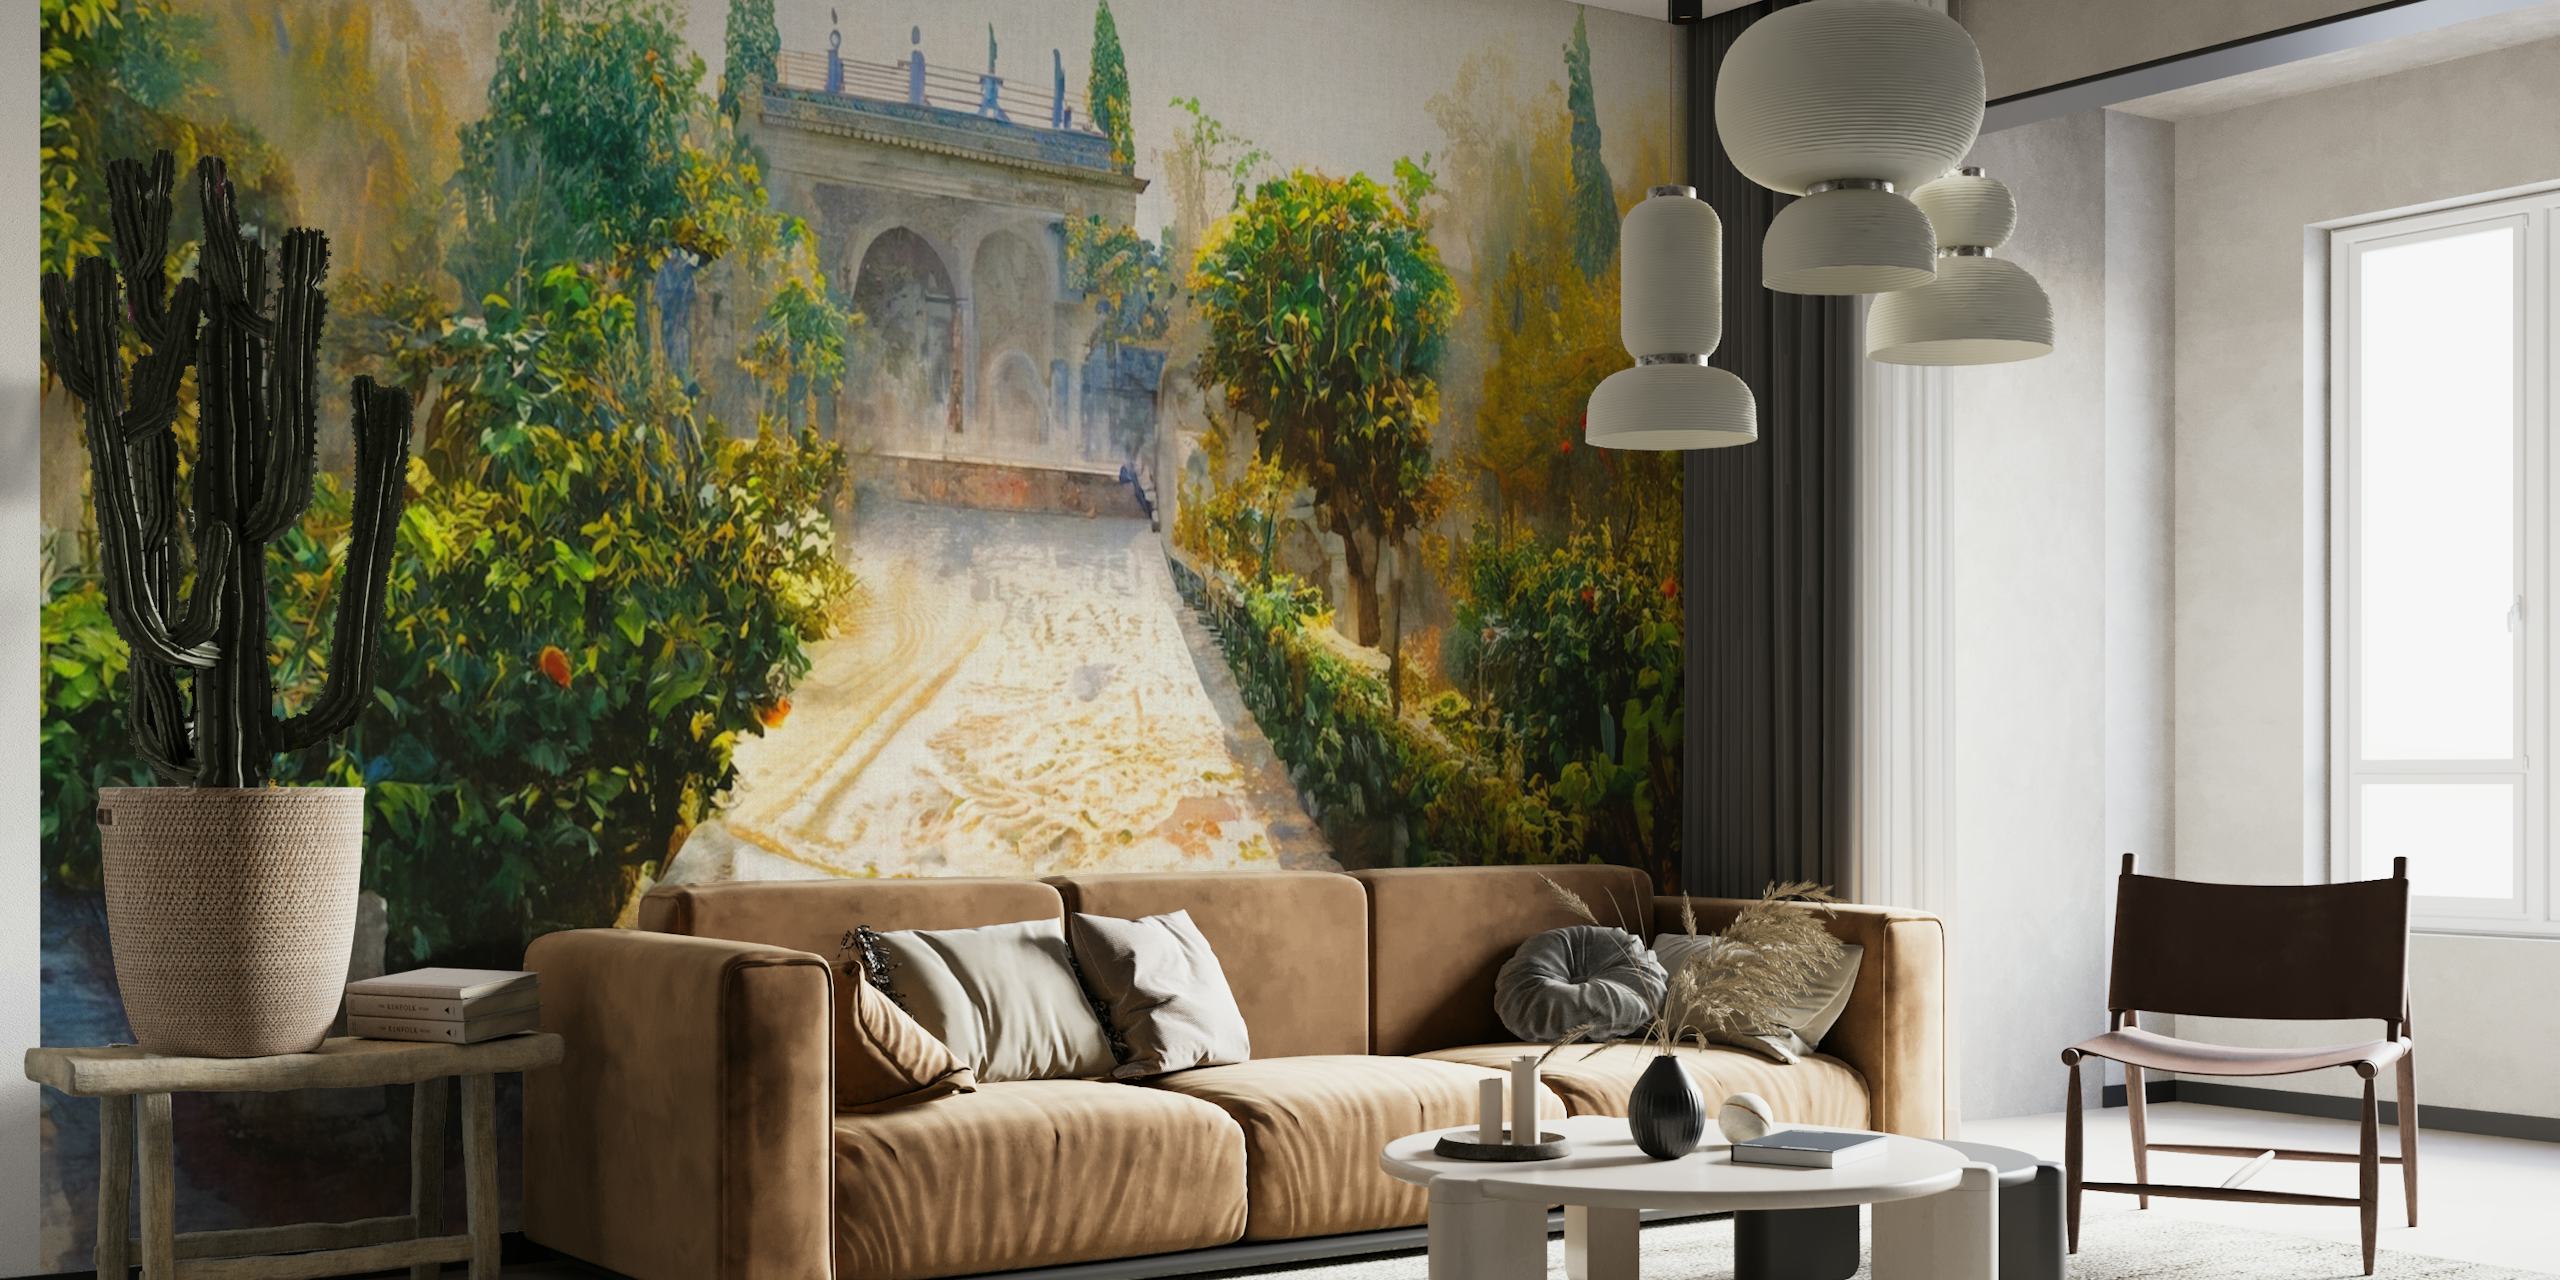 Papier peint mural d'allée de jardin espagnol baigné de soleil avec une verdure luxuriante et un portail orné